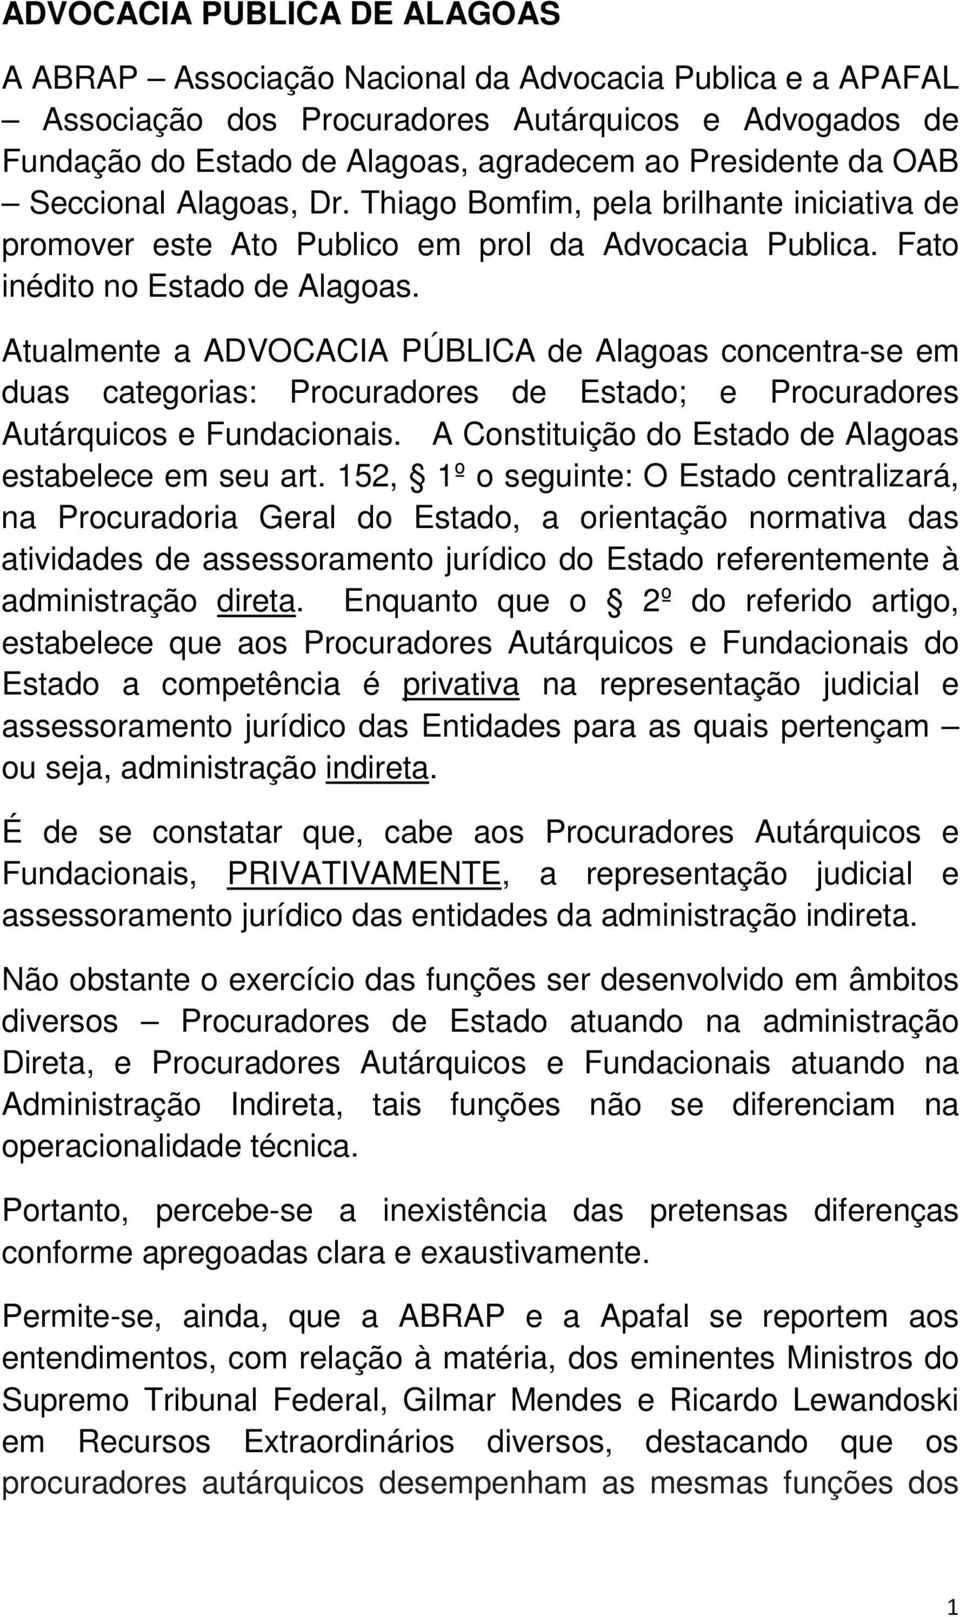 Atualmente a ADVOCACIA PÚBLICA de Alagoas concentra-se em duas categorias: Procuradores de Estado; e Procuradores Autárquicos e Fundacionais. A Constituição do Estado de Alagoas estabelece em seu art.